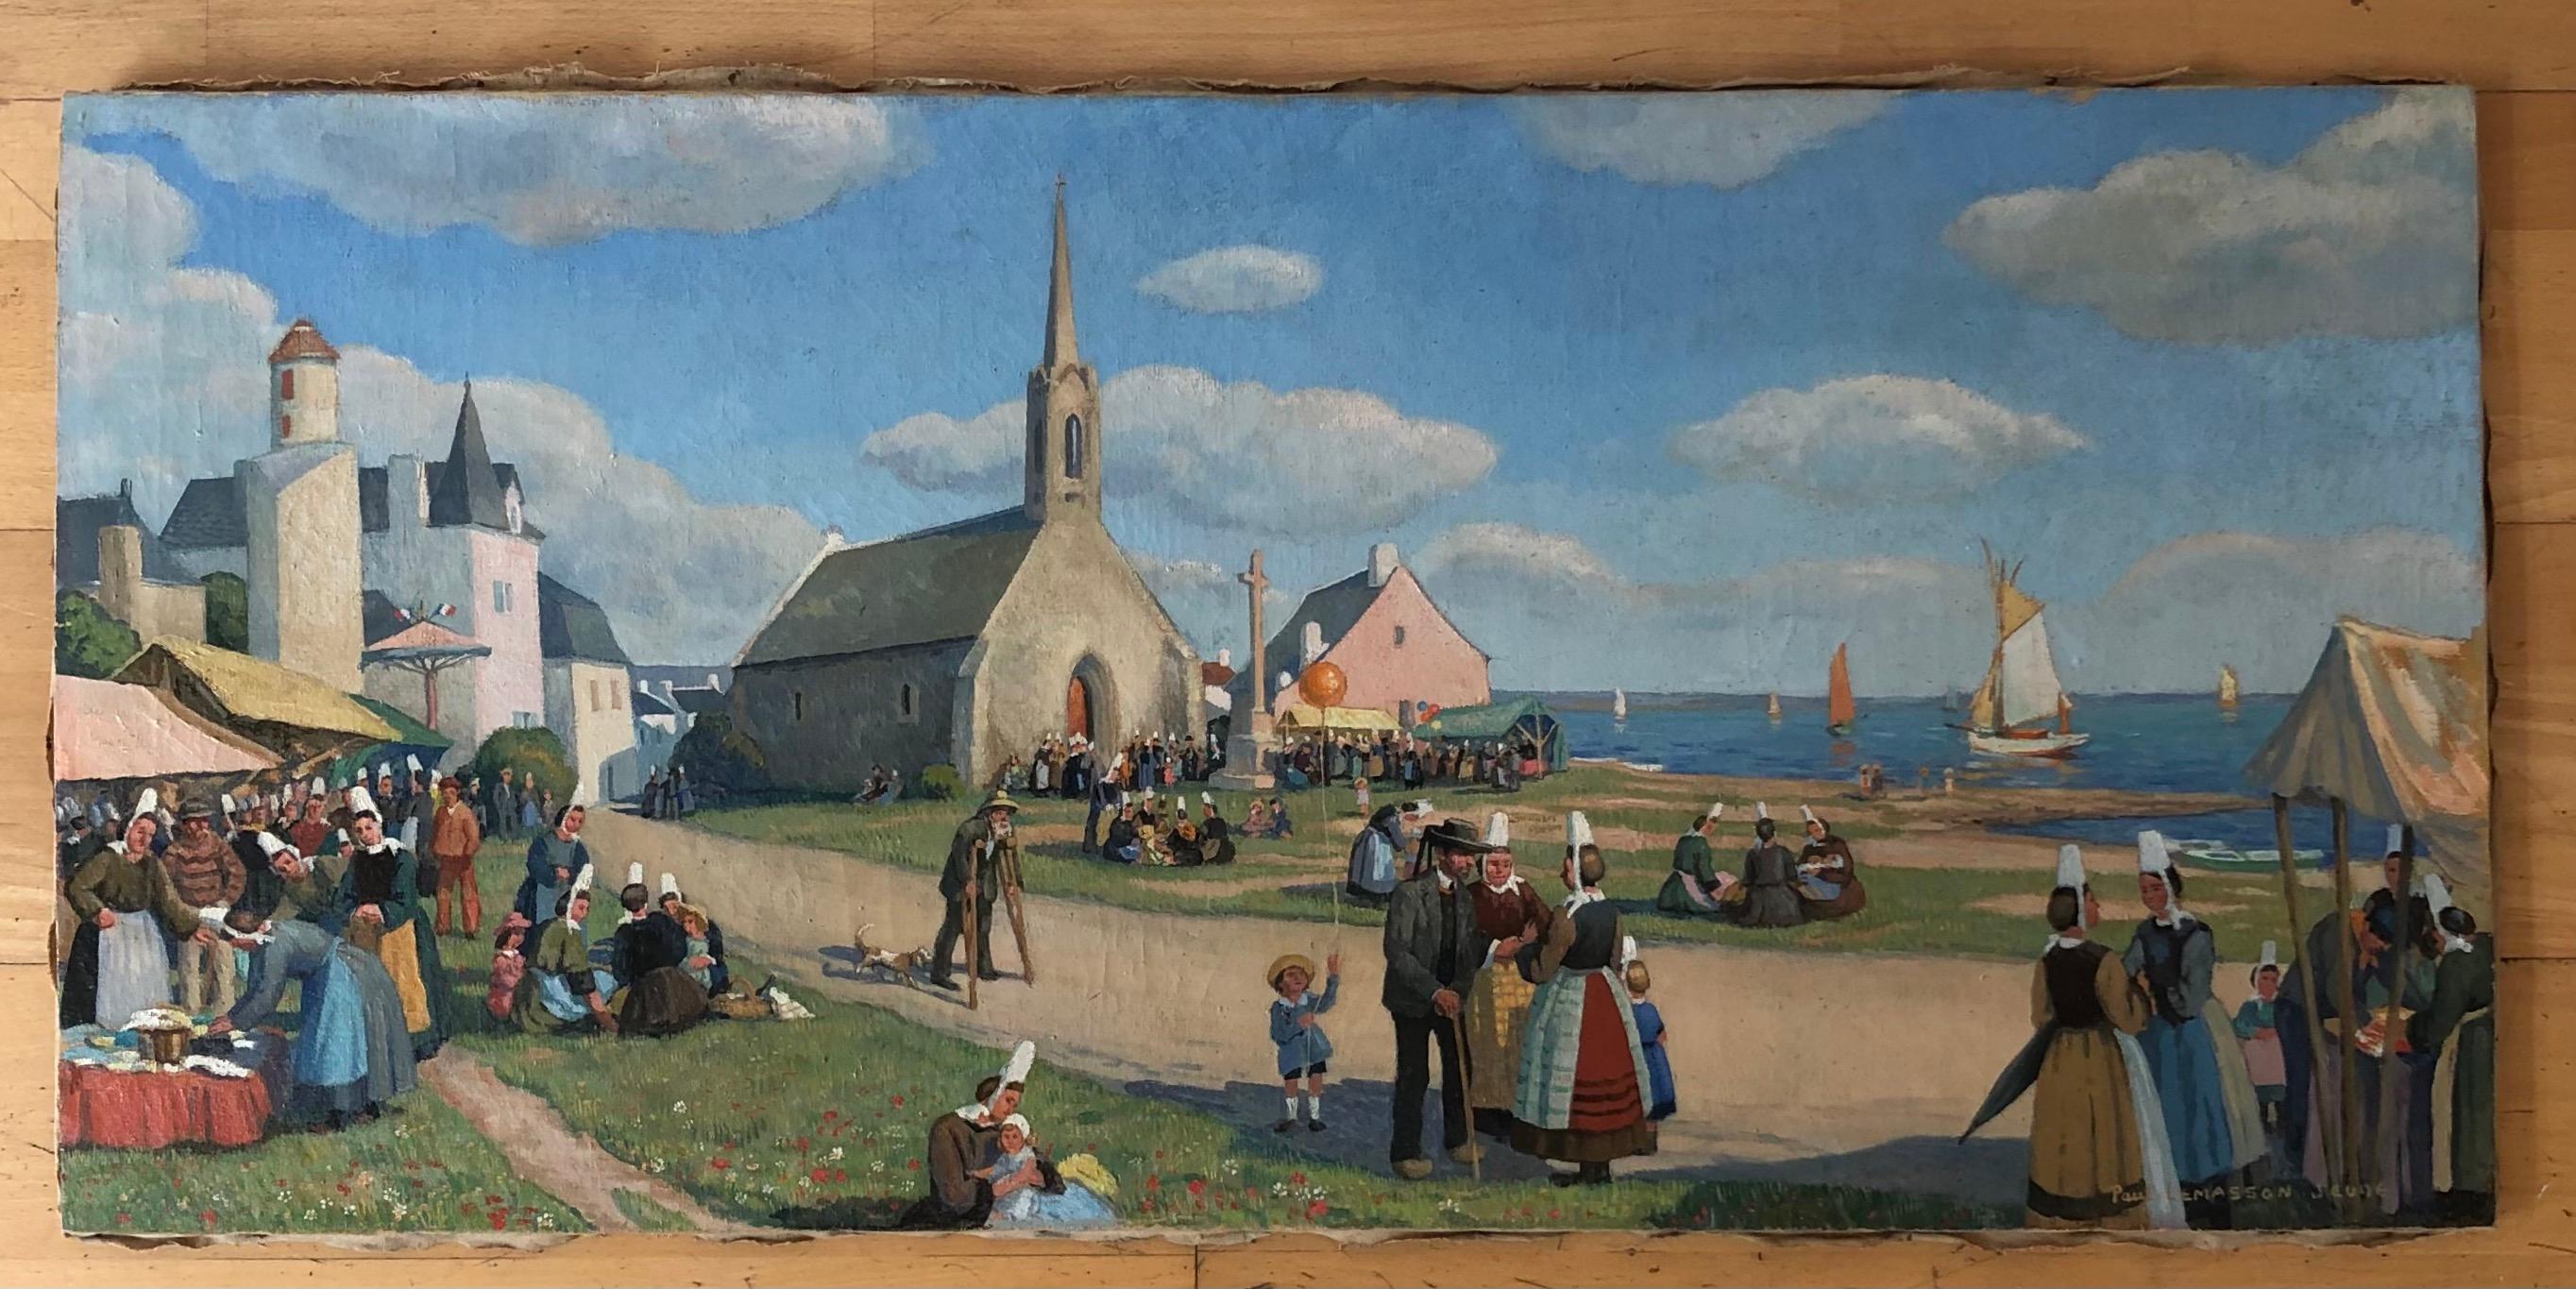 Marché sur le carré de l'église, Bretagne - Painting de Paul Lemasson